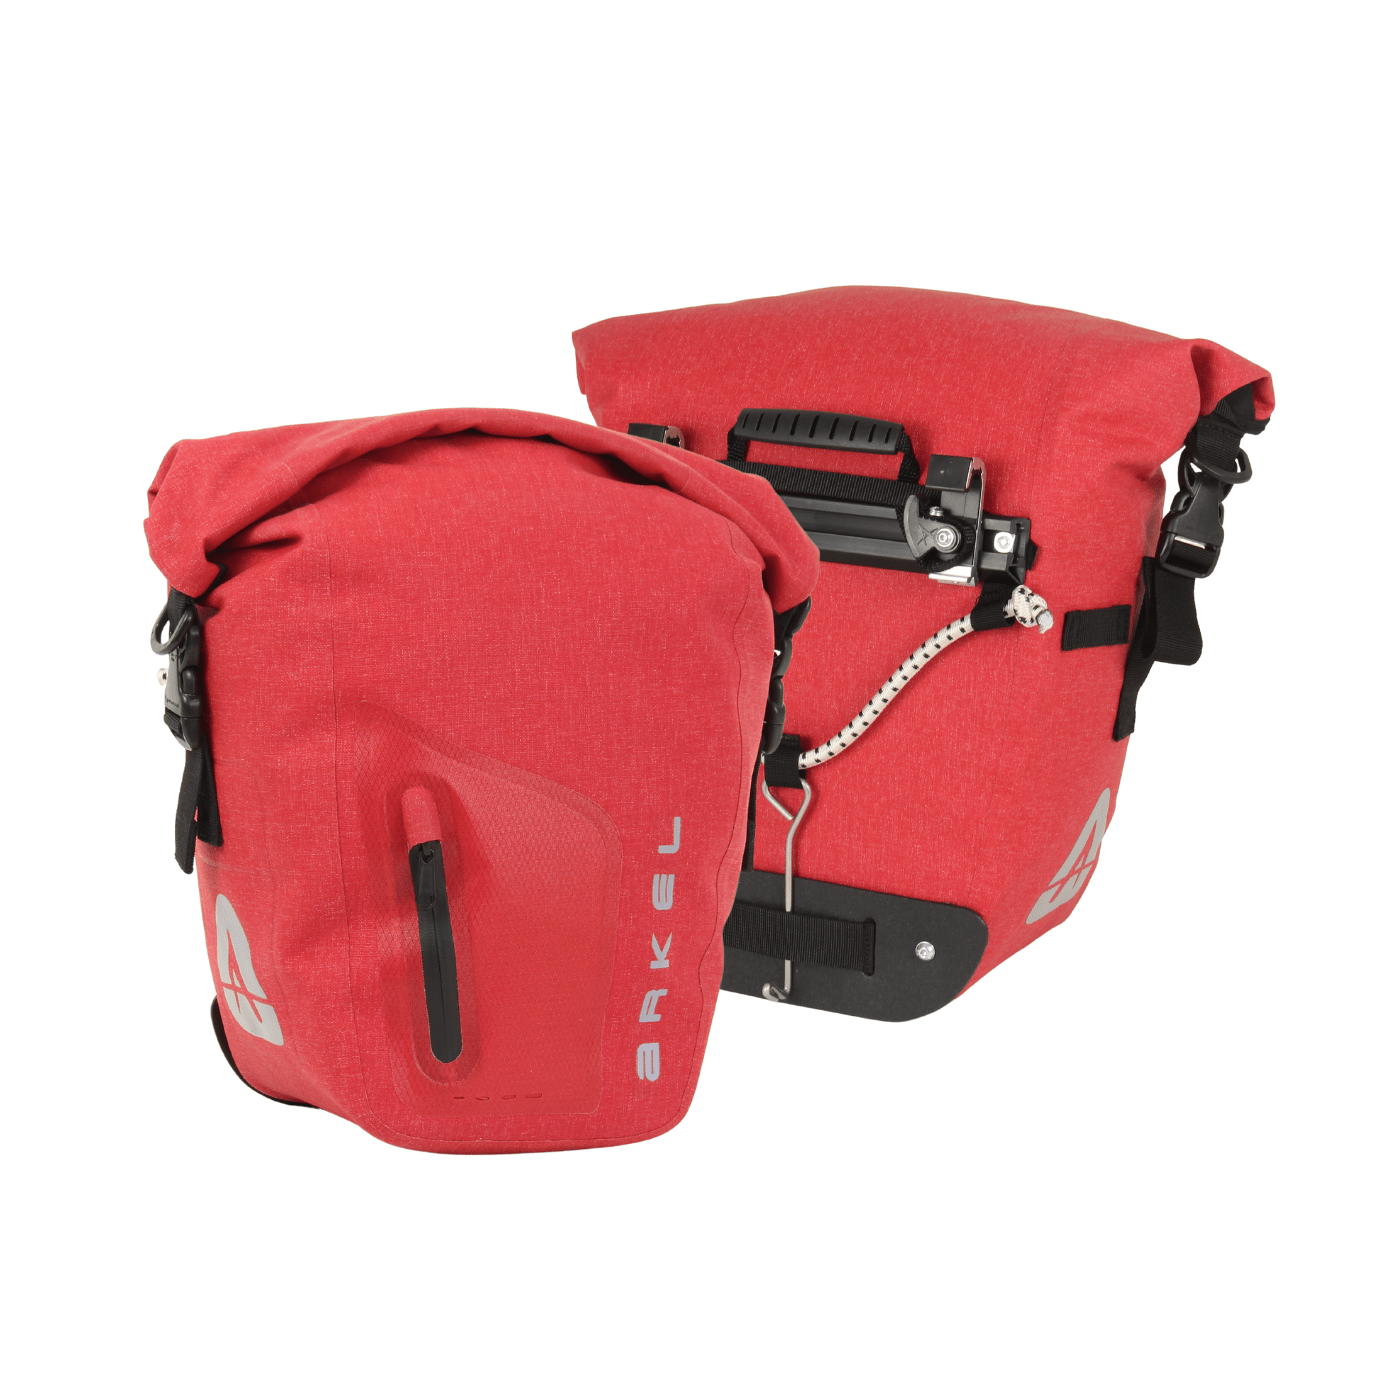 Arkel Bike Bags Red / 12.5 L / Pair Orca - Waterproof Pannier